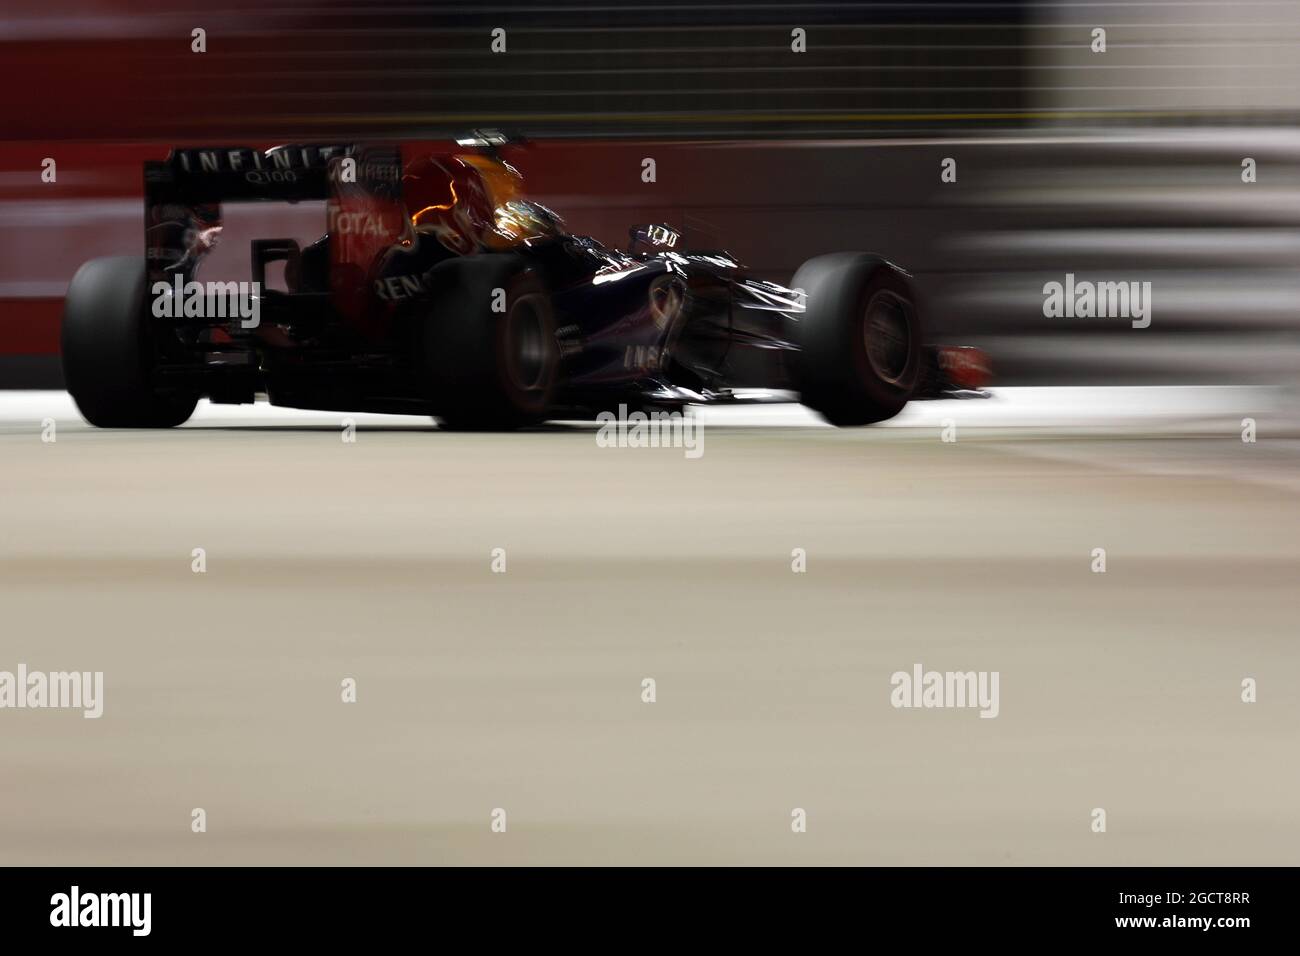 Sebastian Vettel (GER) Red Bull Racing RB9. Gran Premio di Singapore, domenica 22 settembre 2013. Circuito Marina Bay Street, Singapore. Foto Stock